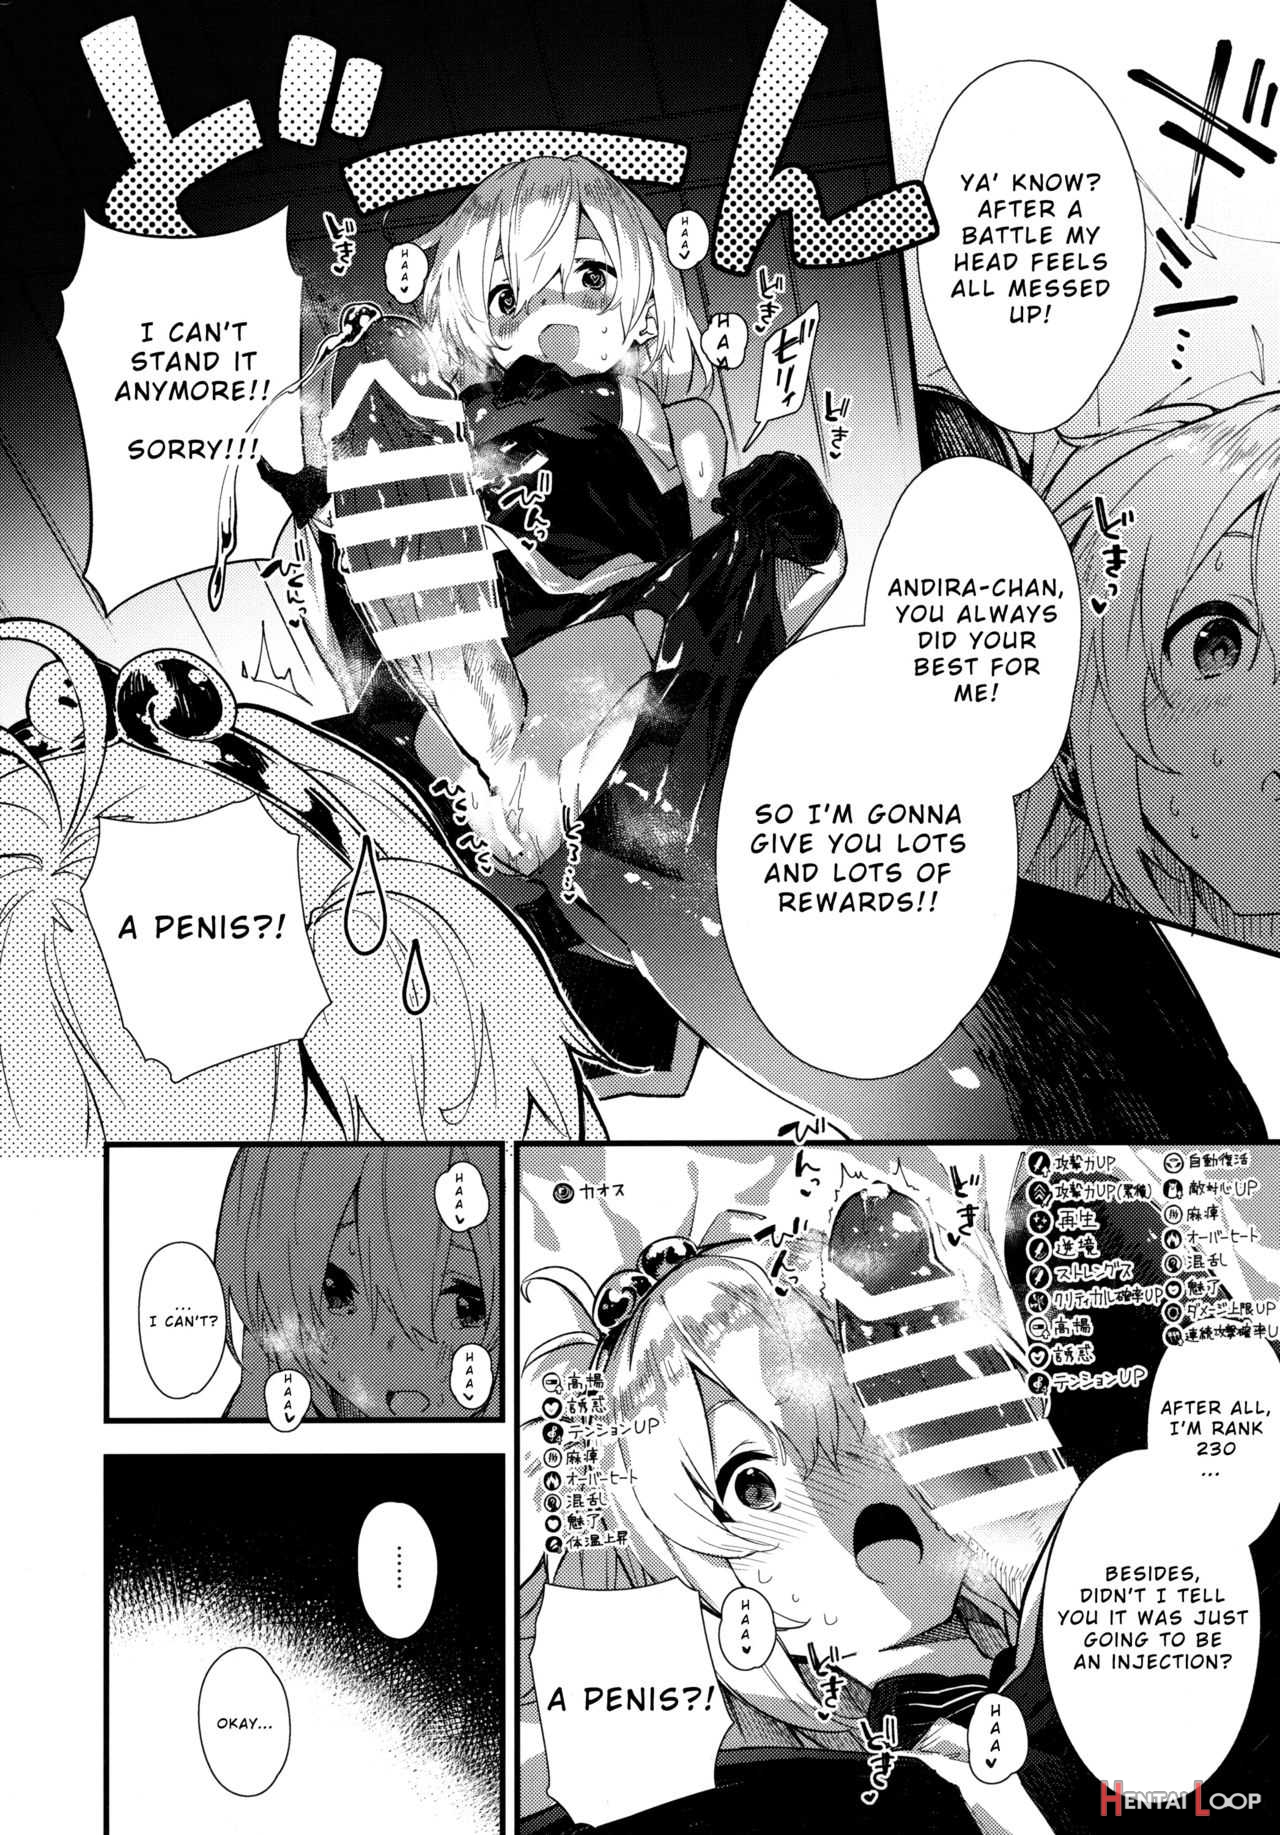 Andira-chan To Ecchi Suru Hon page 9